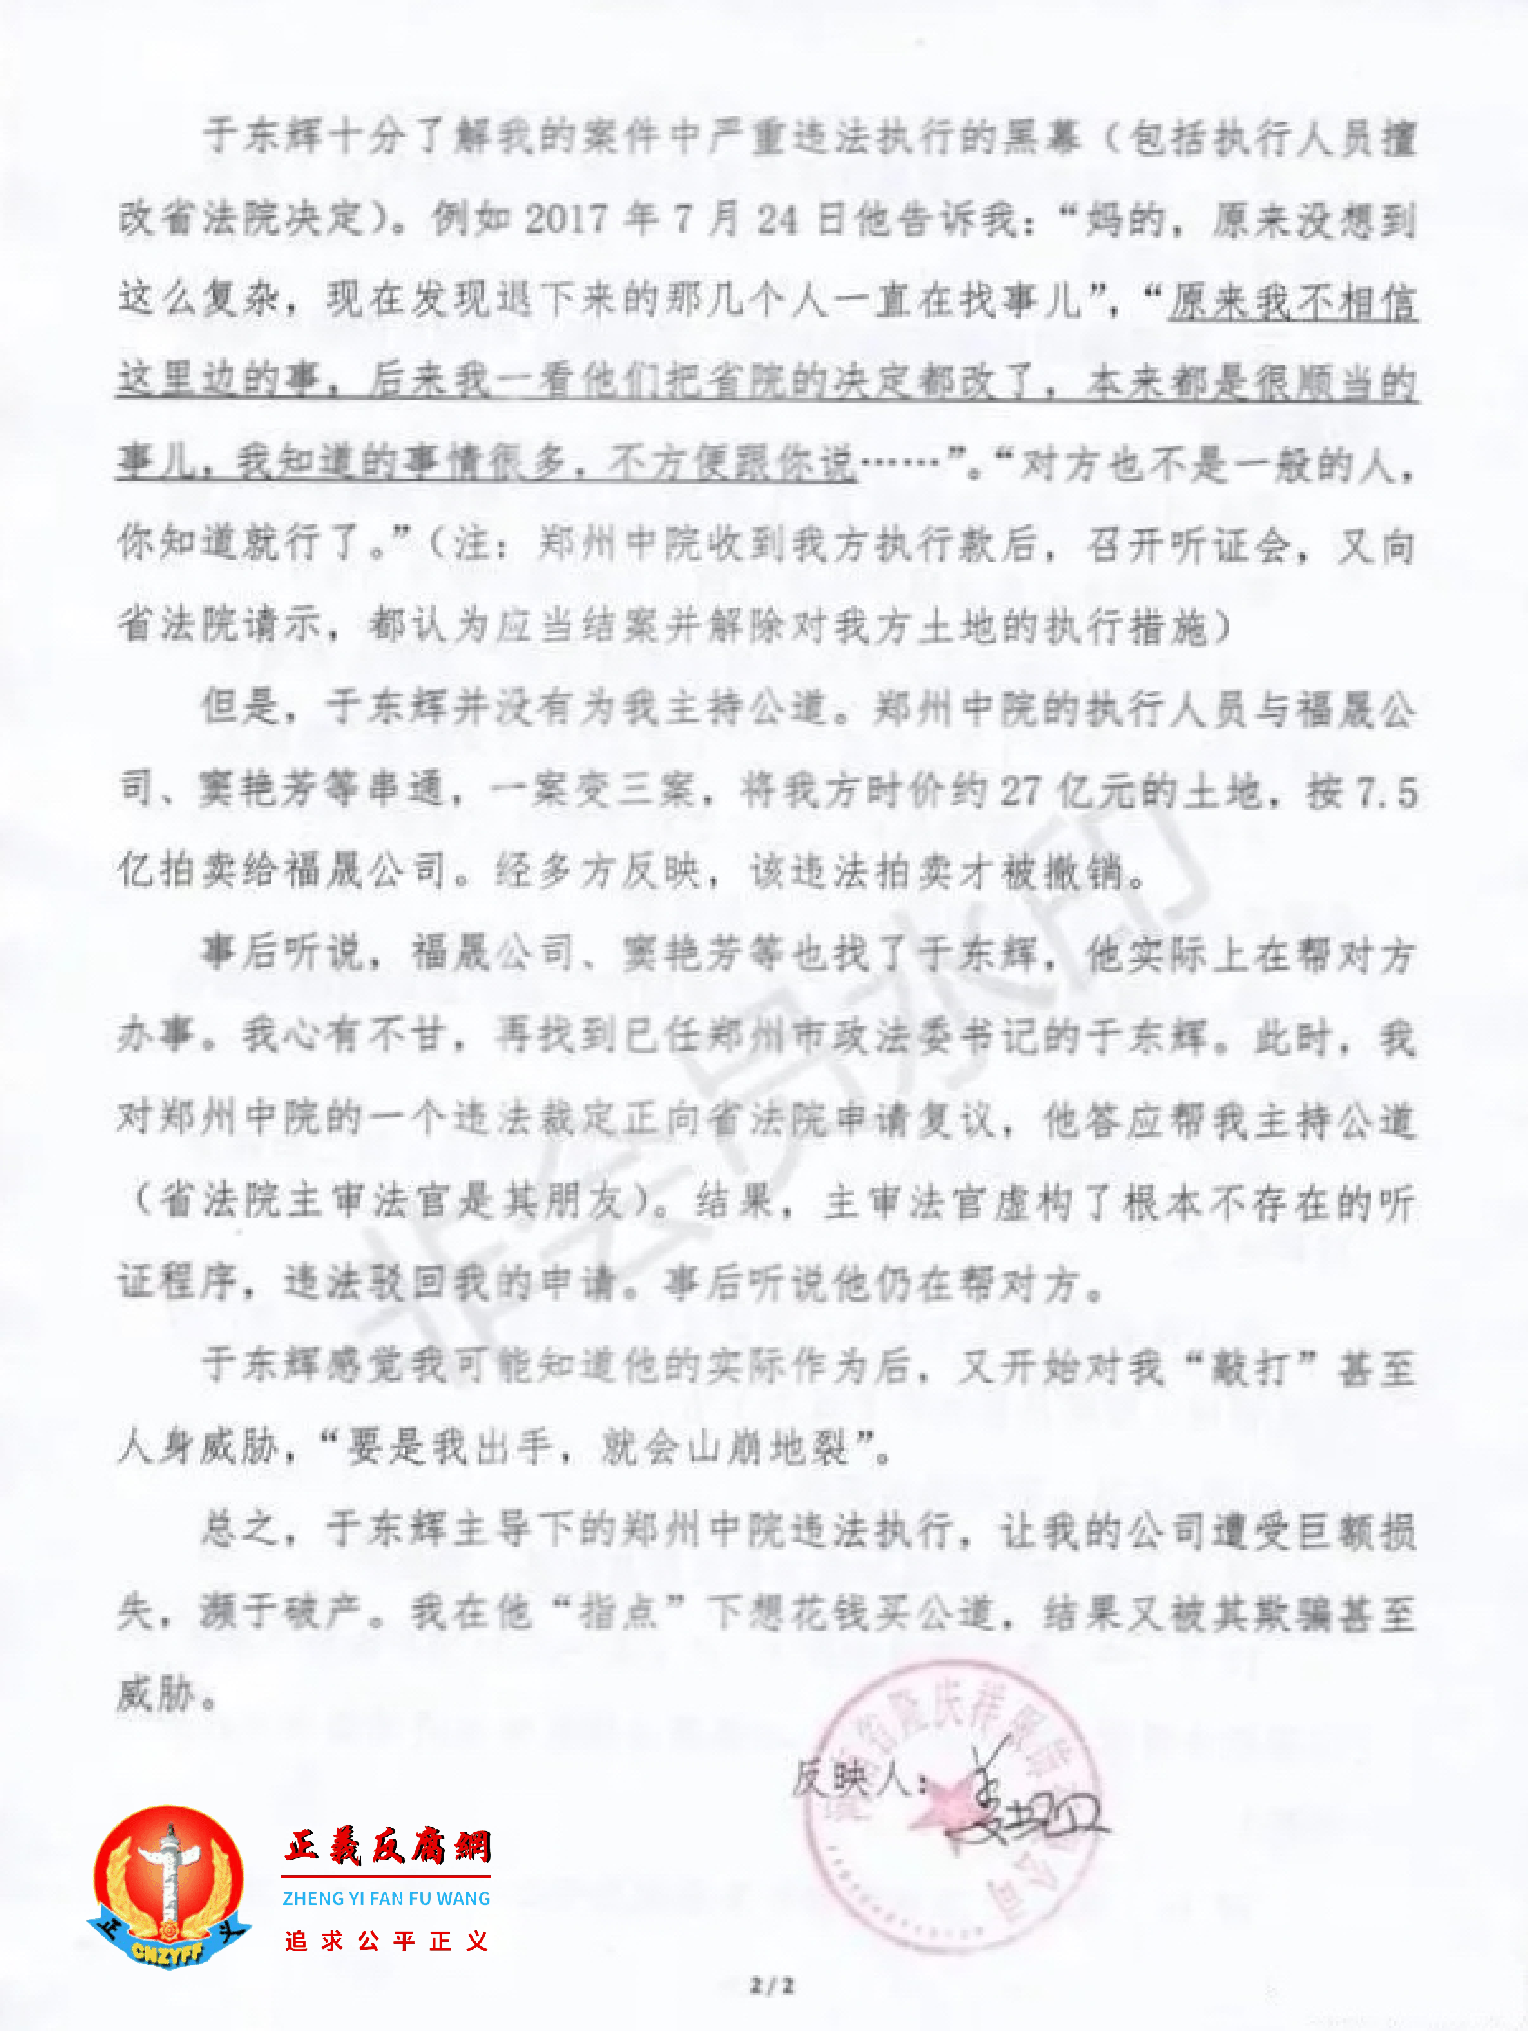 关于原郑州中级法院院长于东辉借案索贿及郑州中院执行人员篡改省院决定的证据材料 2.png